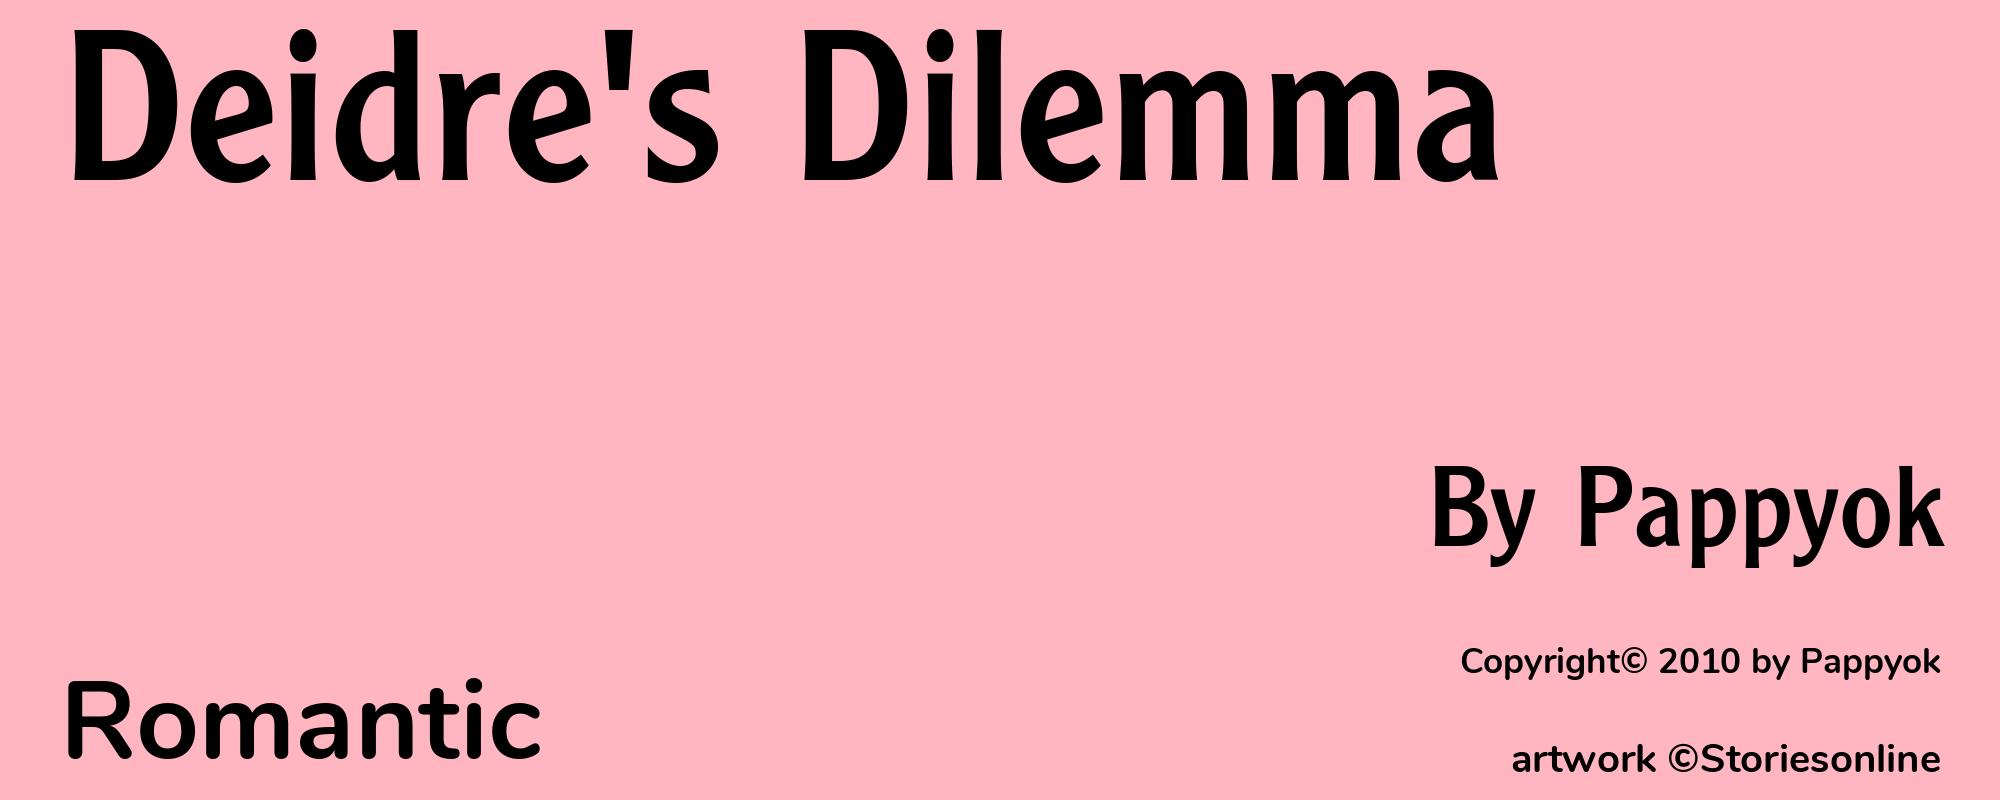 Deidre's Dilemma - Cover